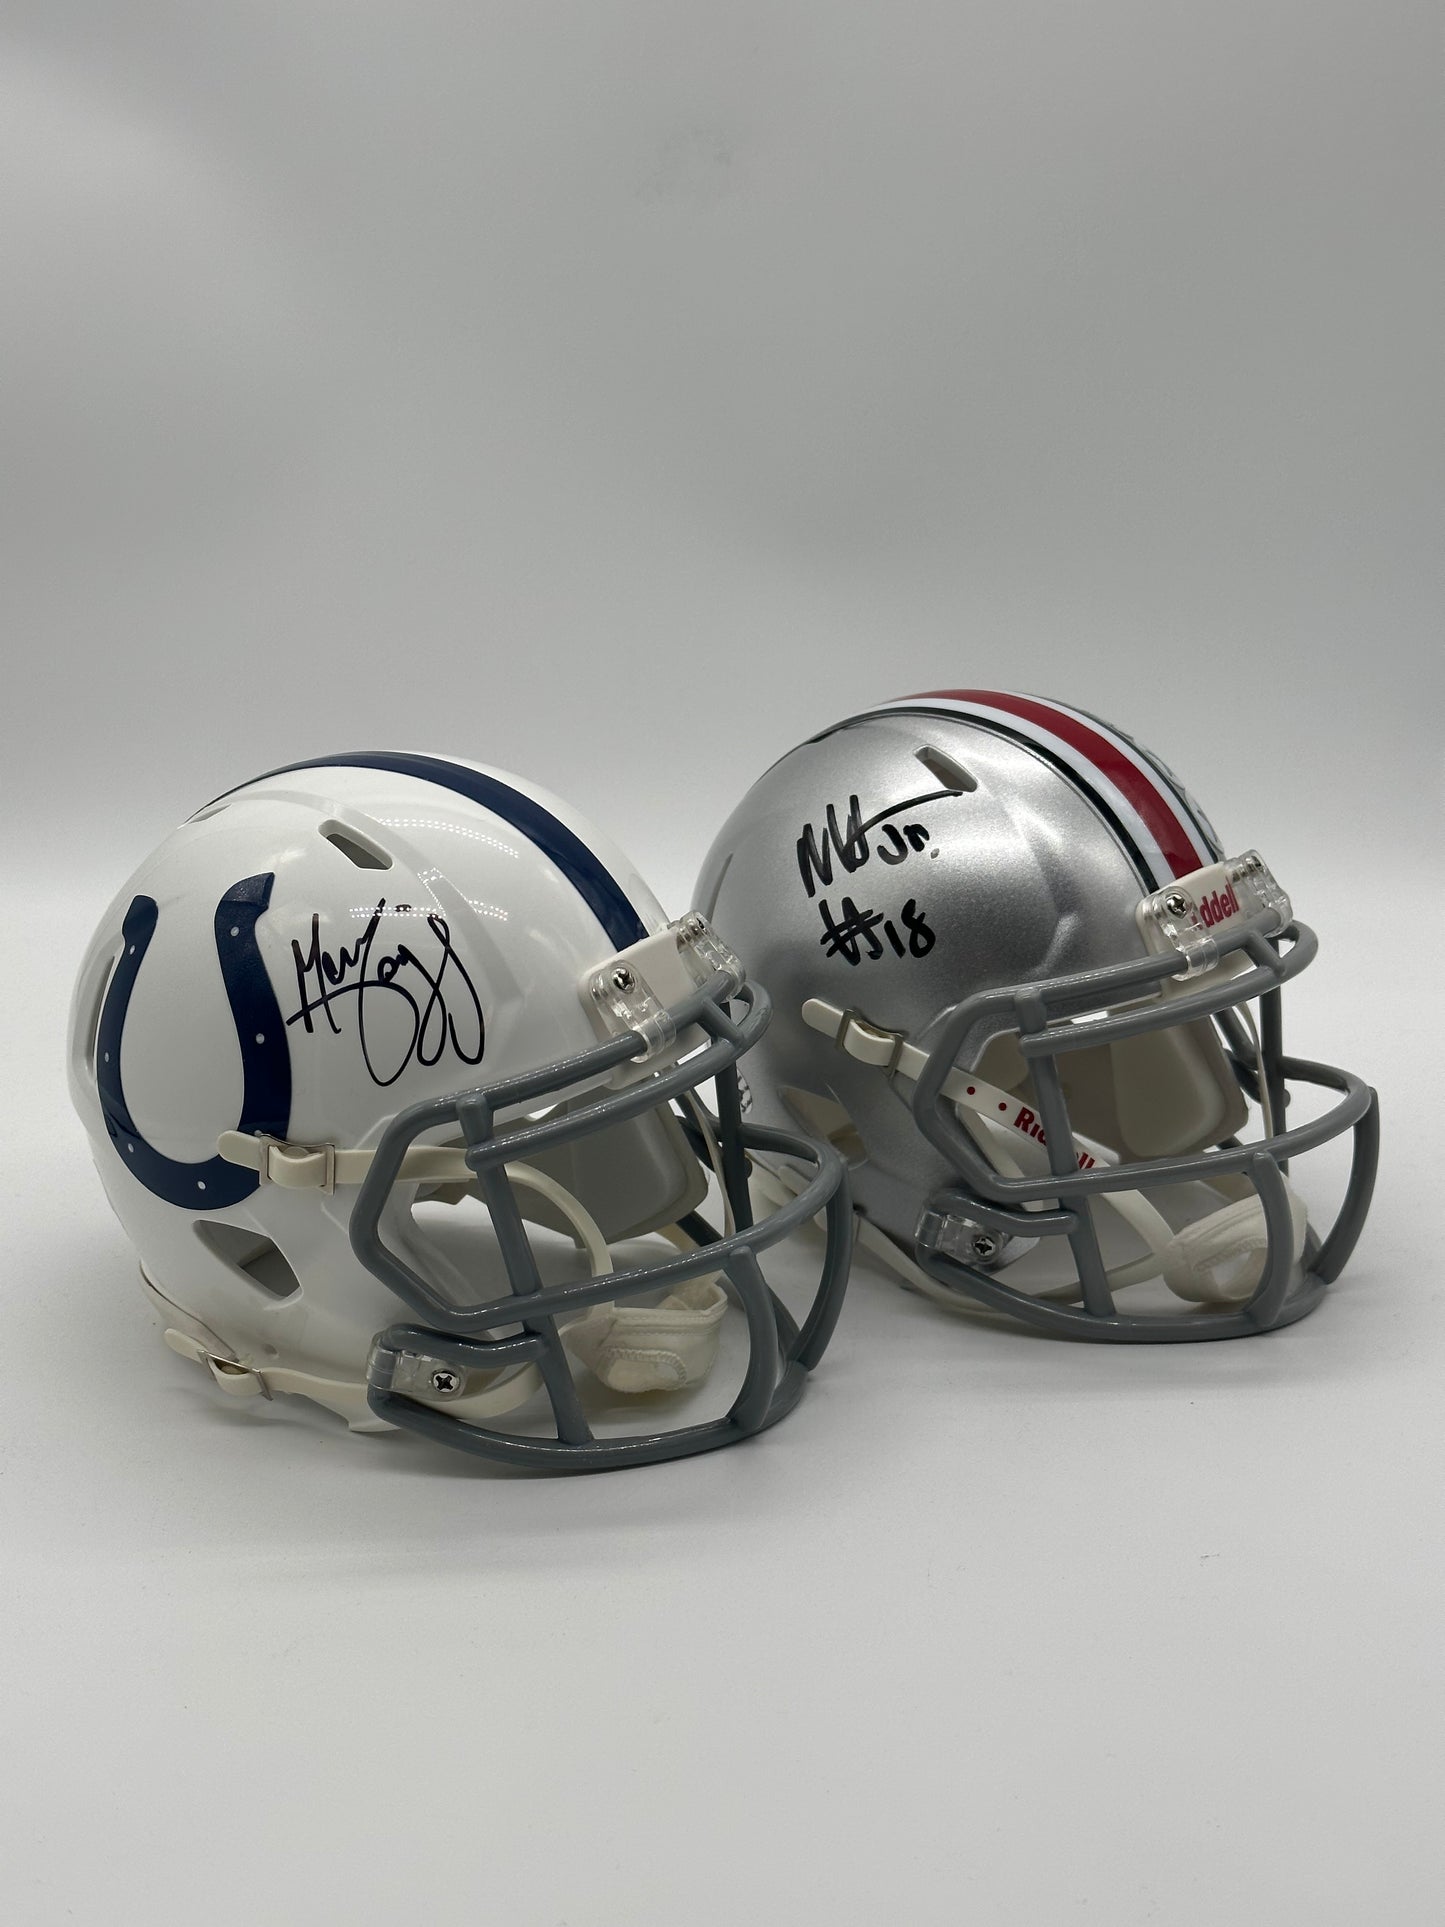 Pair of Autographed Marvin Harrison Sr & Marvin Harrison Jr - Mini Speed Helmet